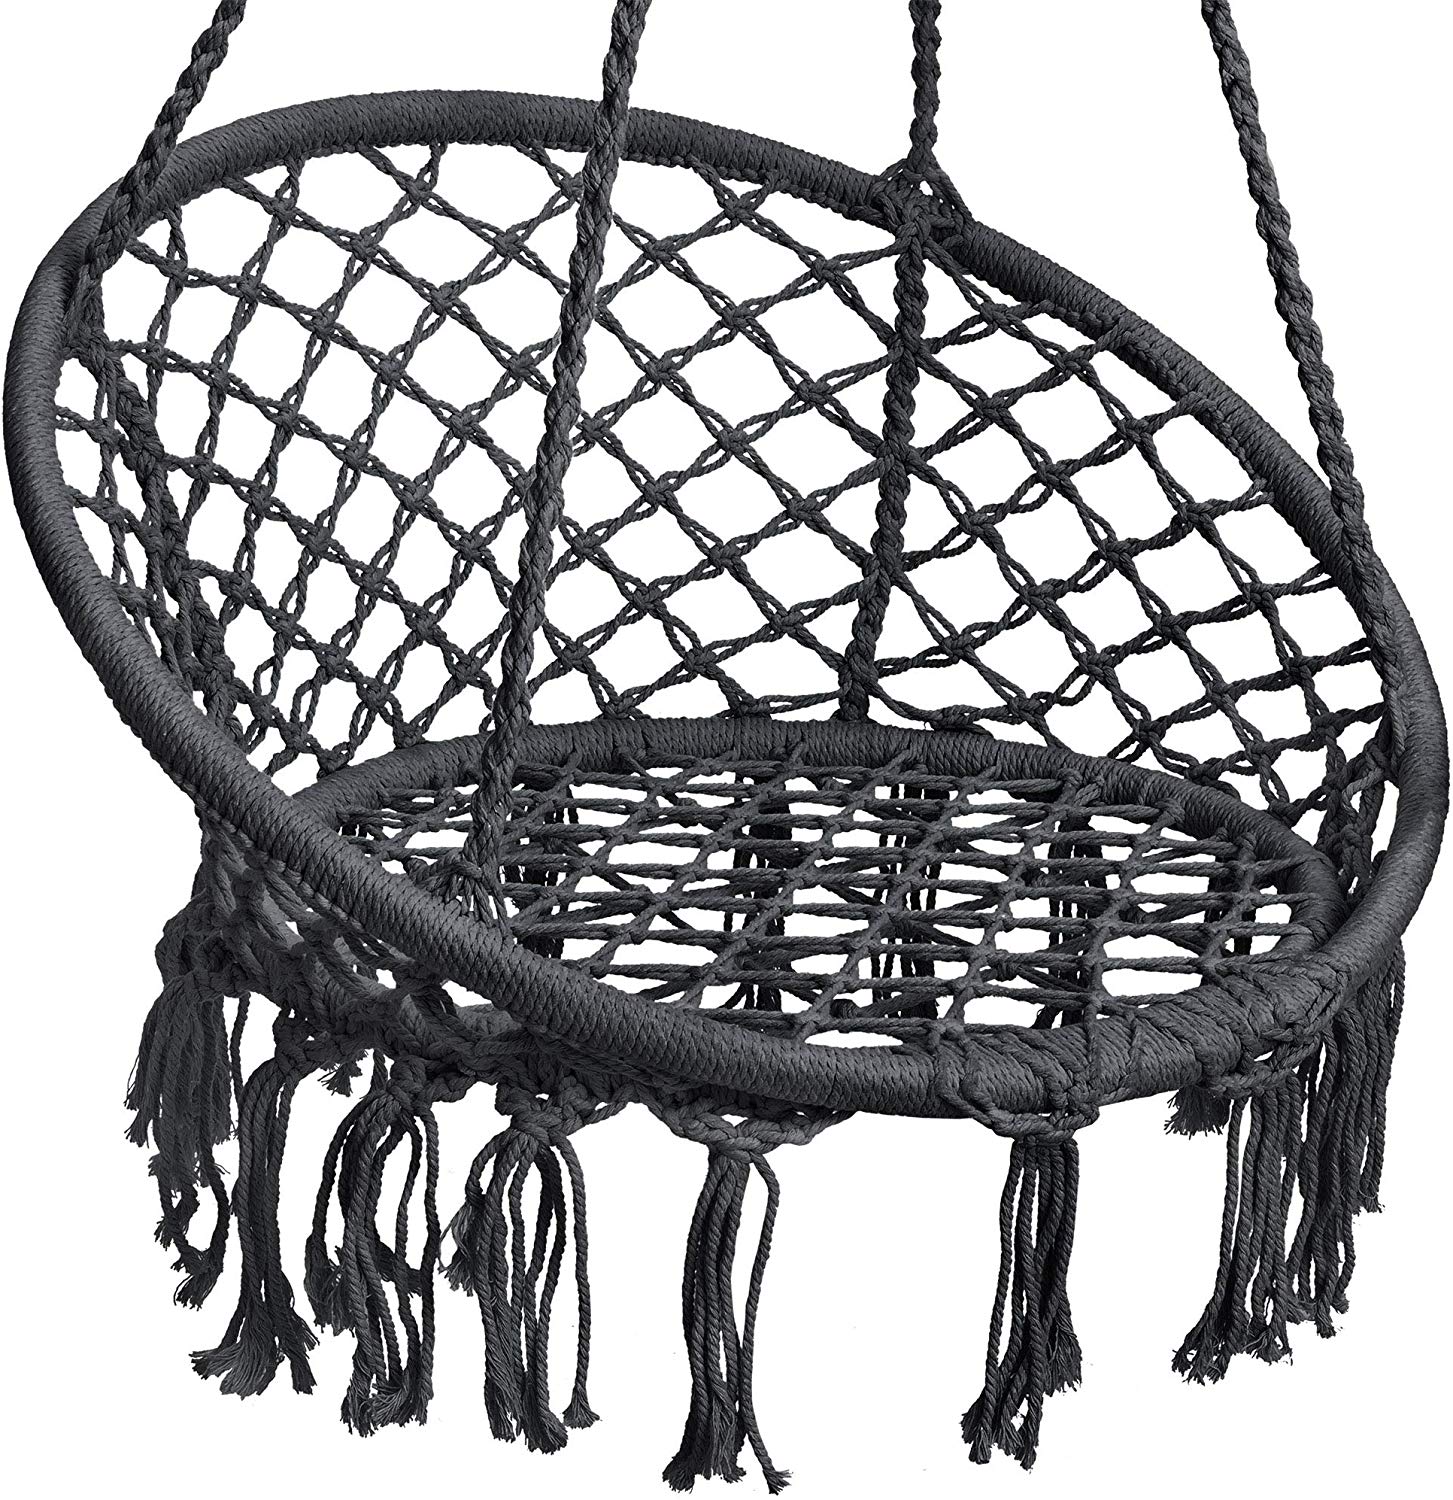 Macrame Hanging Chair Indoor & Outdoor Black - The Shopsite